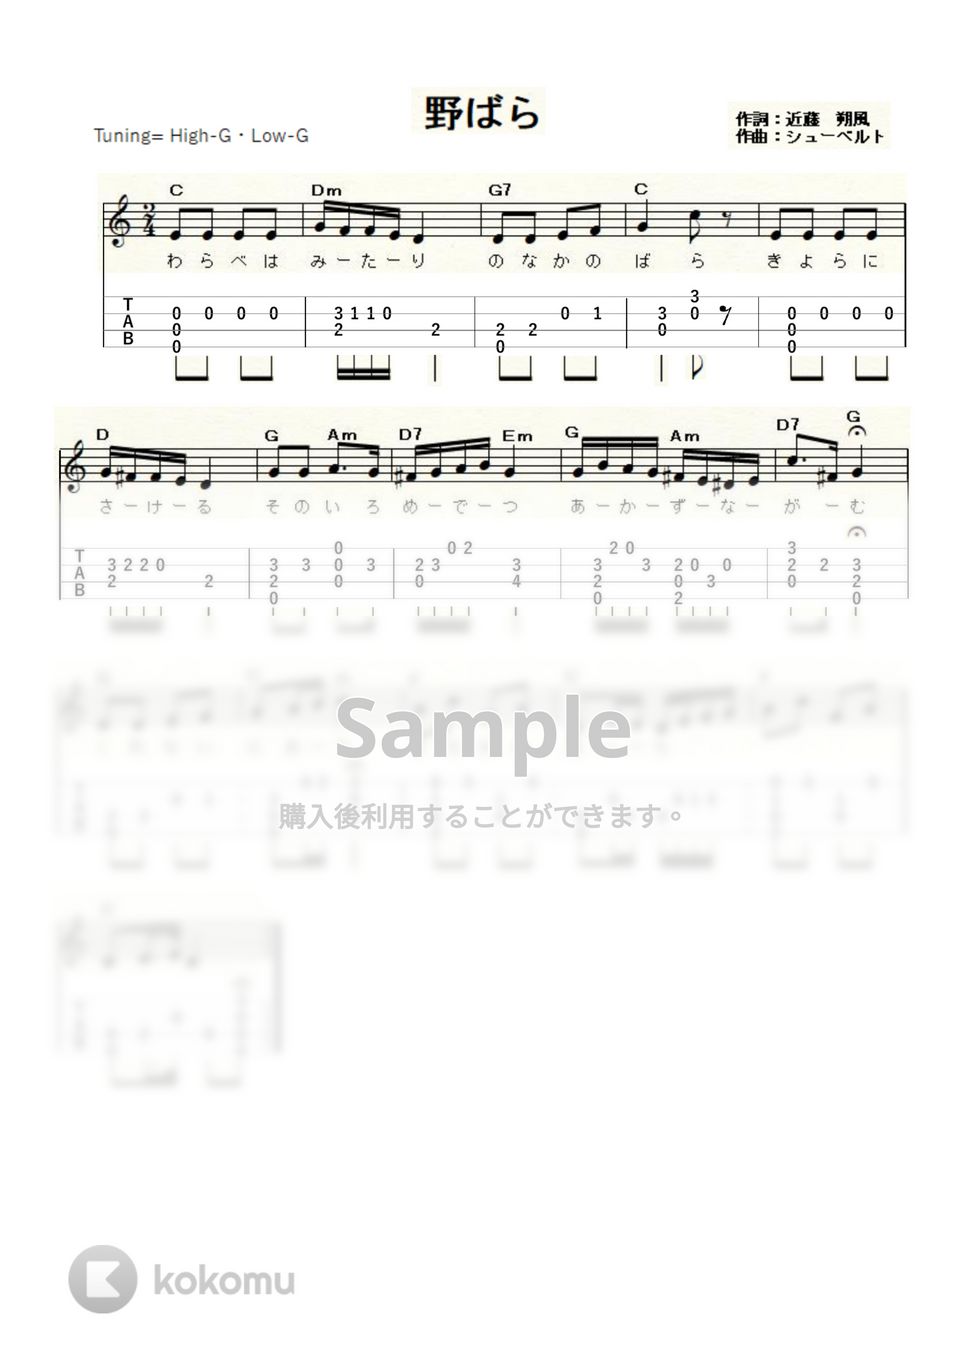 シューベルト - 野ばら (ｳｸﾚﾚｿﾛ/High-G,Low-G/初級) by ukulelepapa